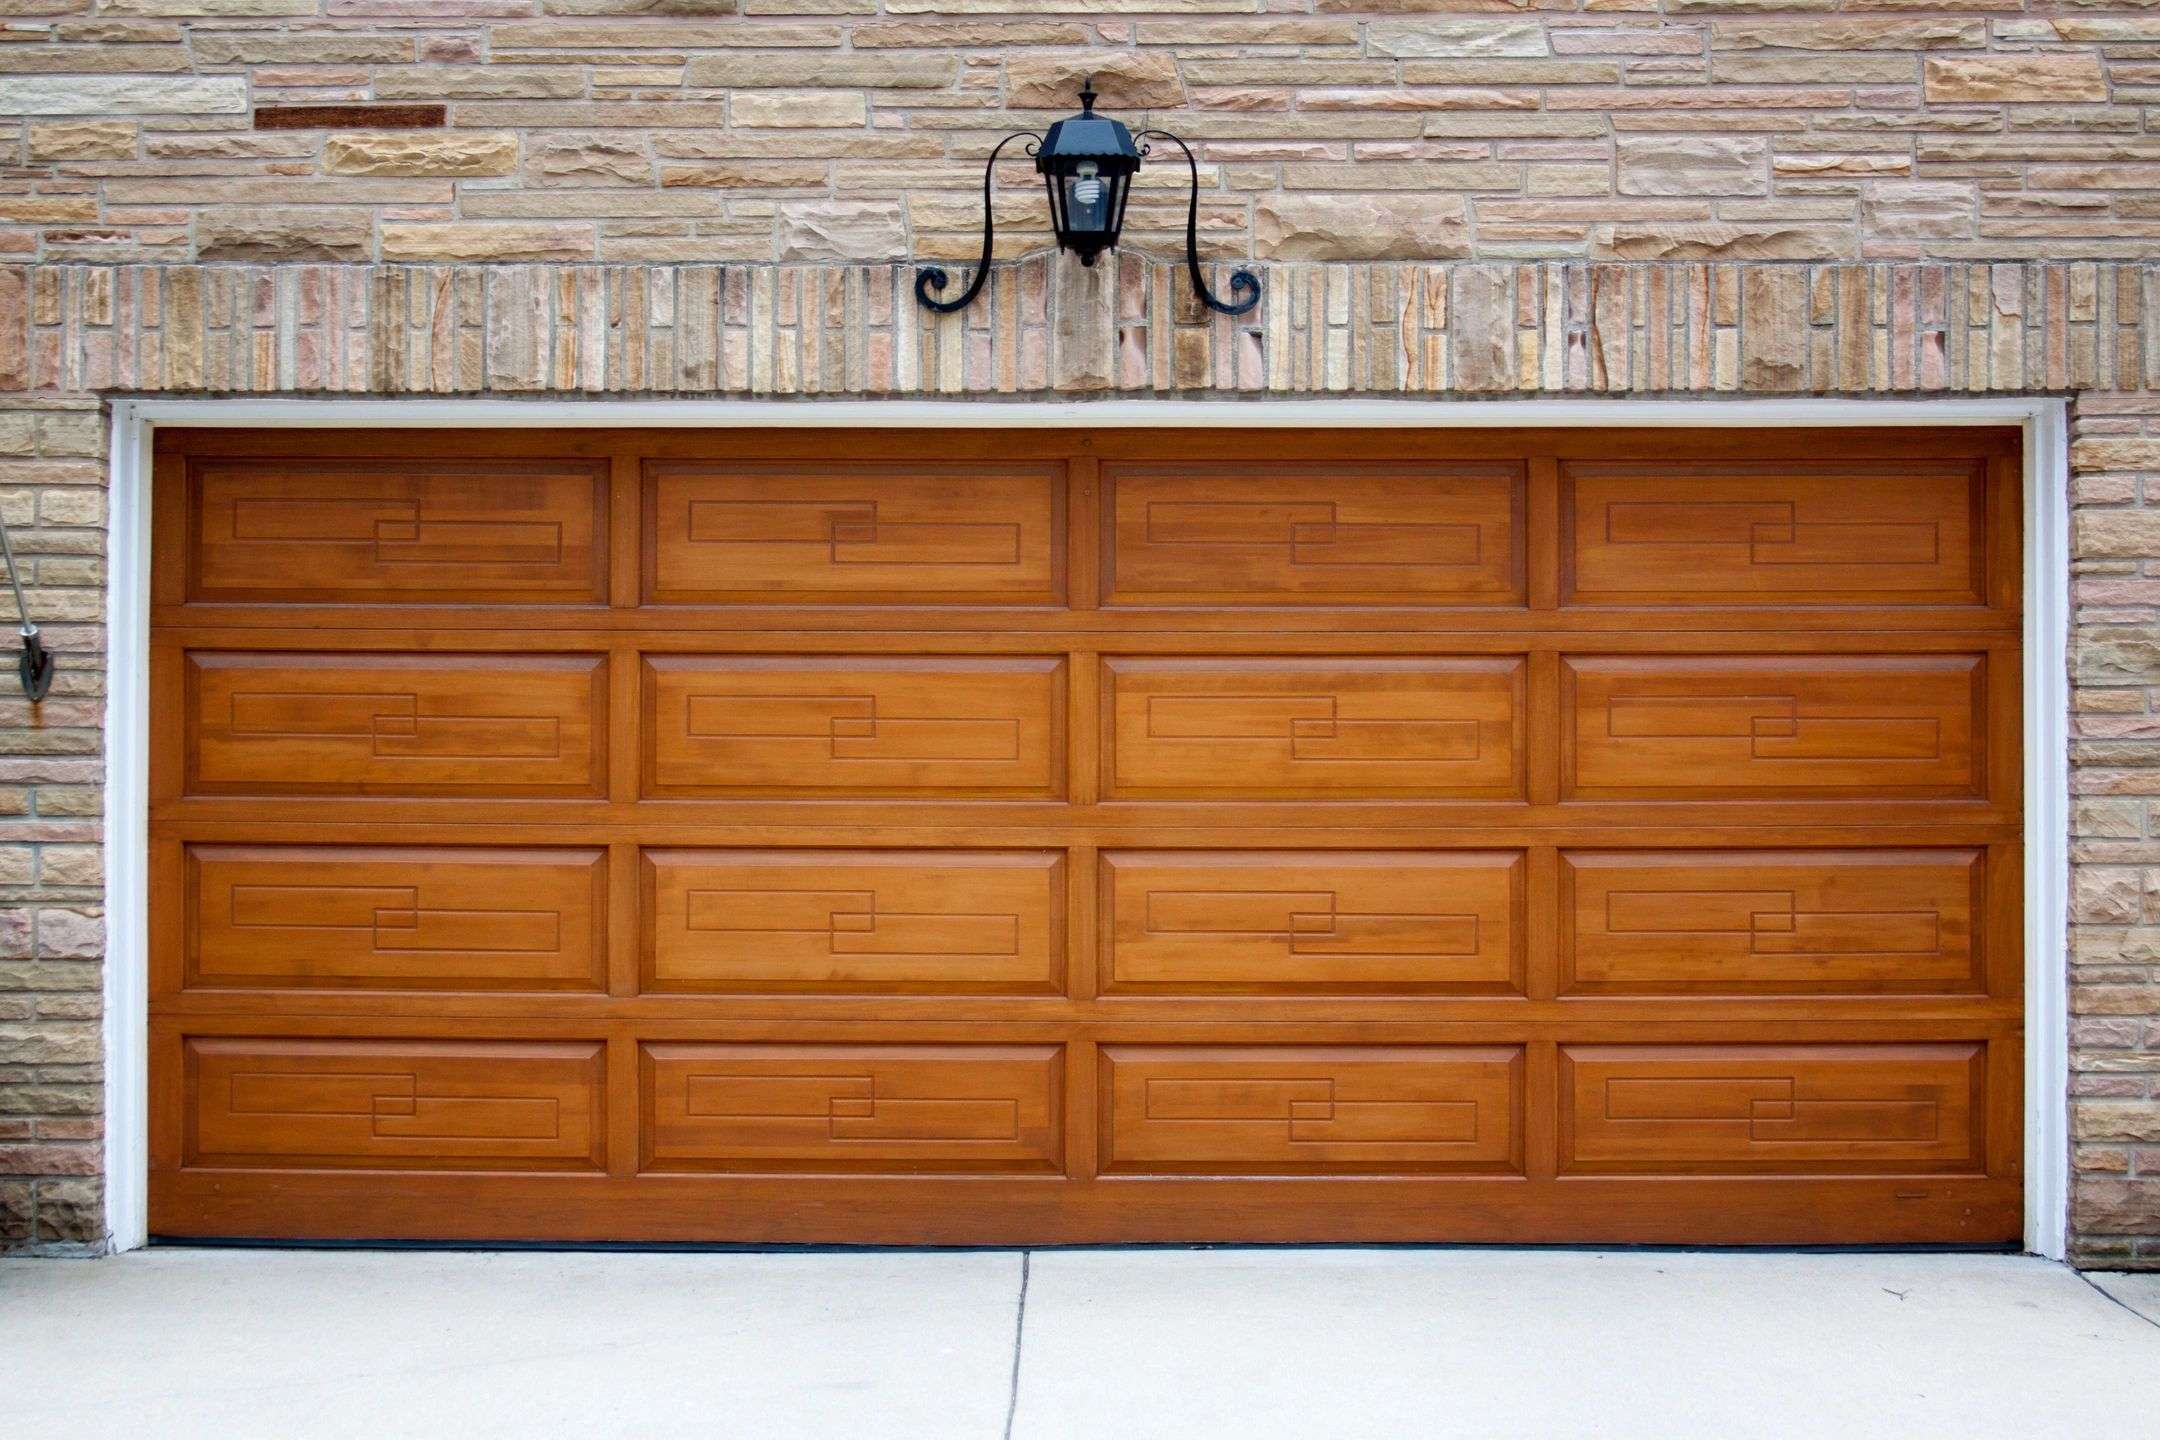 Troubleshooting Tricks When Garage Door Sticks